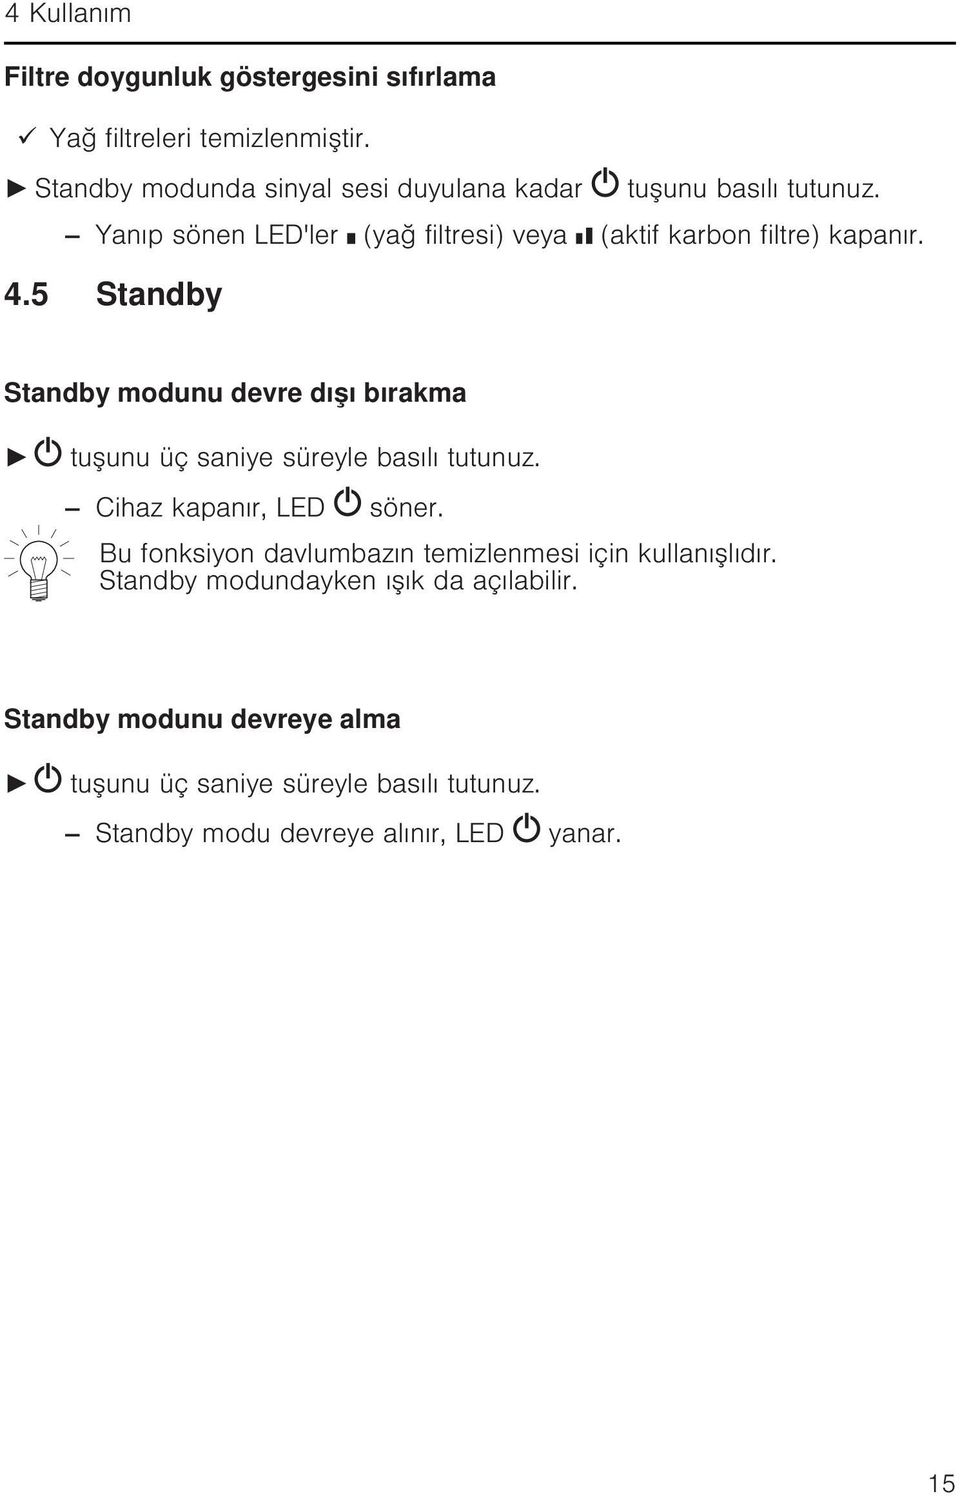 4.5 Standby Standby modunu devre dışı bırakma tuşunu üç saniye süreyle basılı tutunuz. Cihaz kapanır, LED söner.